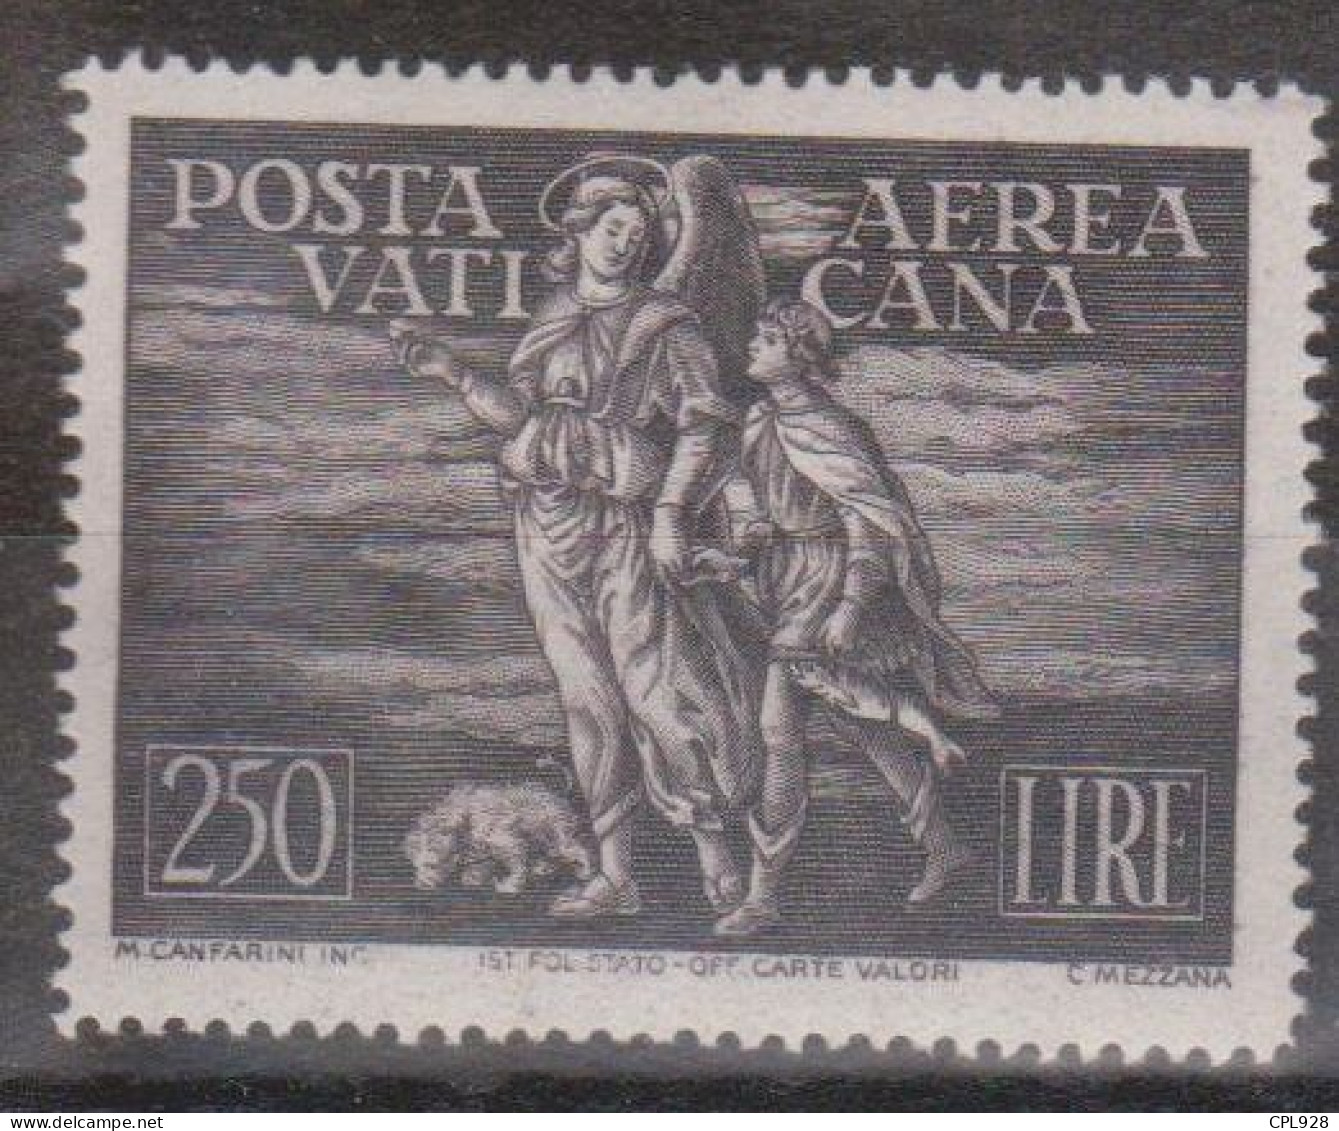 Vatican Poste Aérienne N° PA16 Avec Charnière - Poste Aérienne